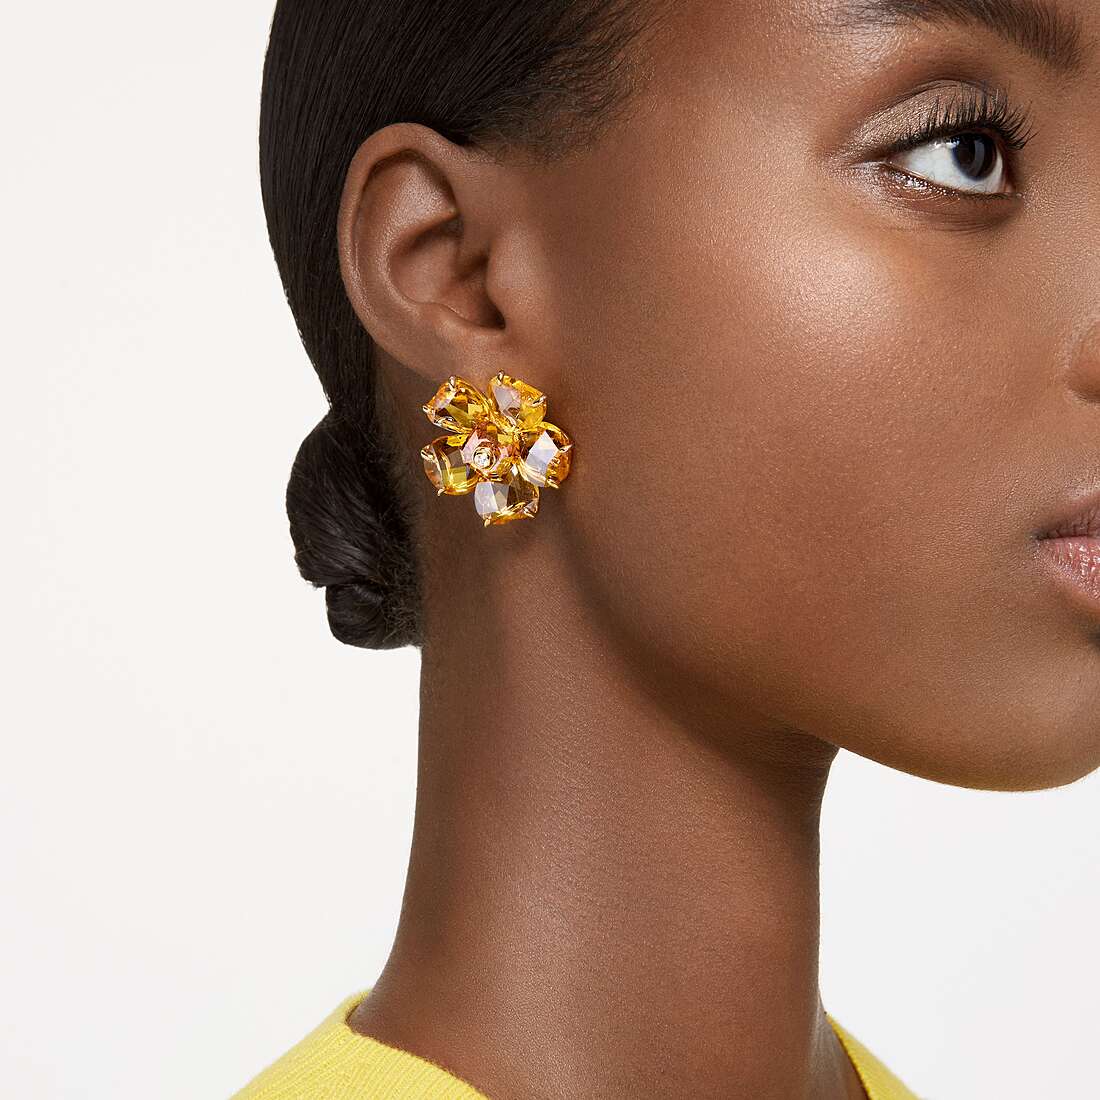 Swarovski earrings woman 5650571 photo wearing